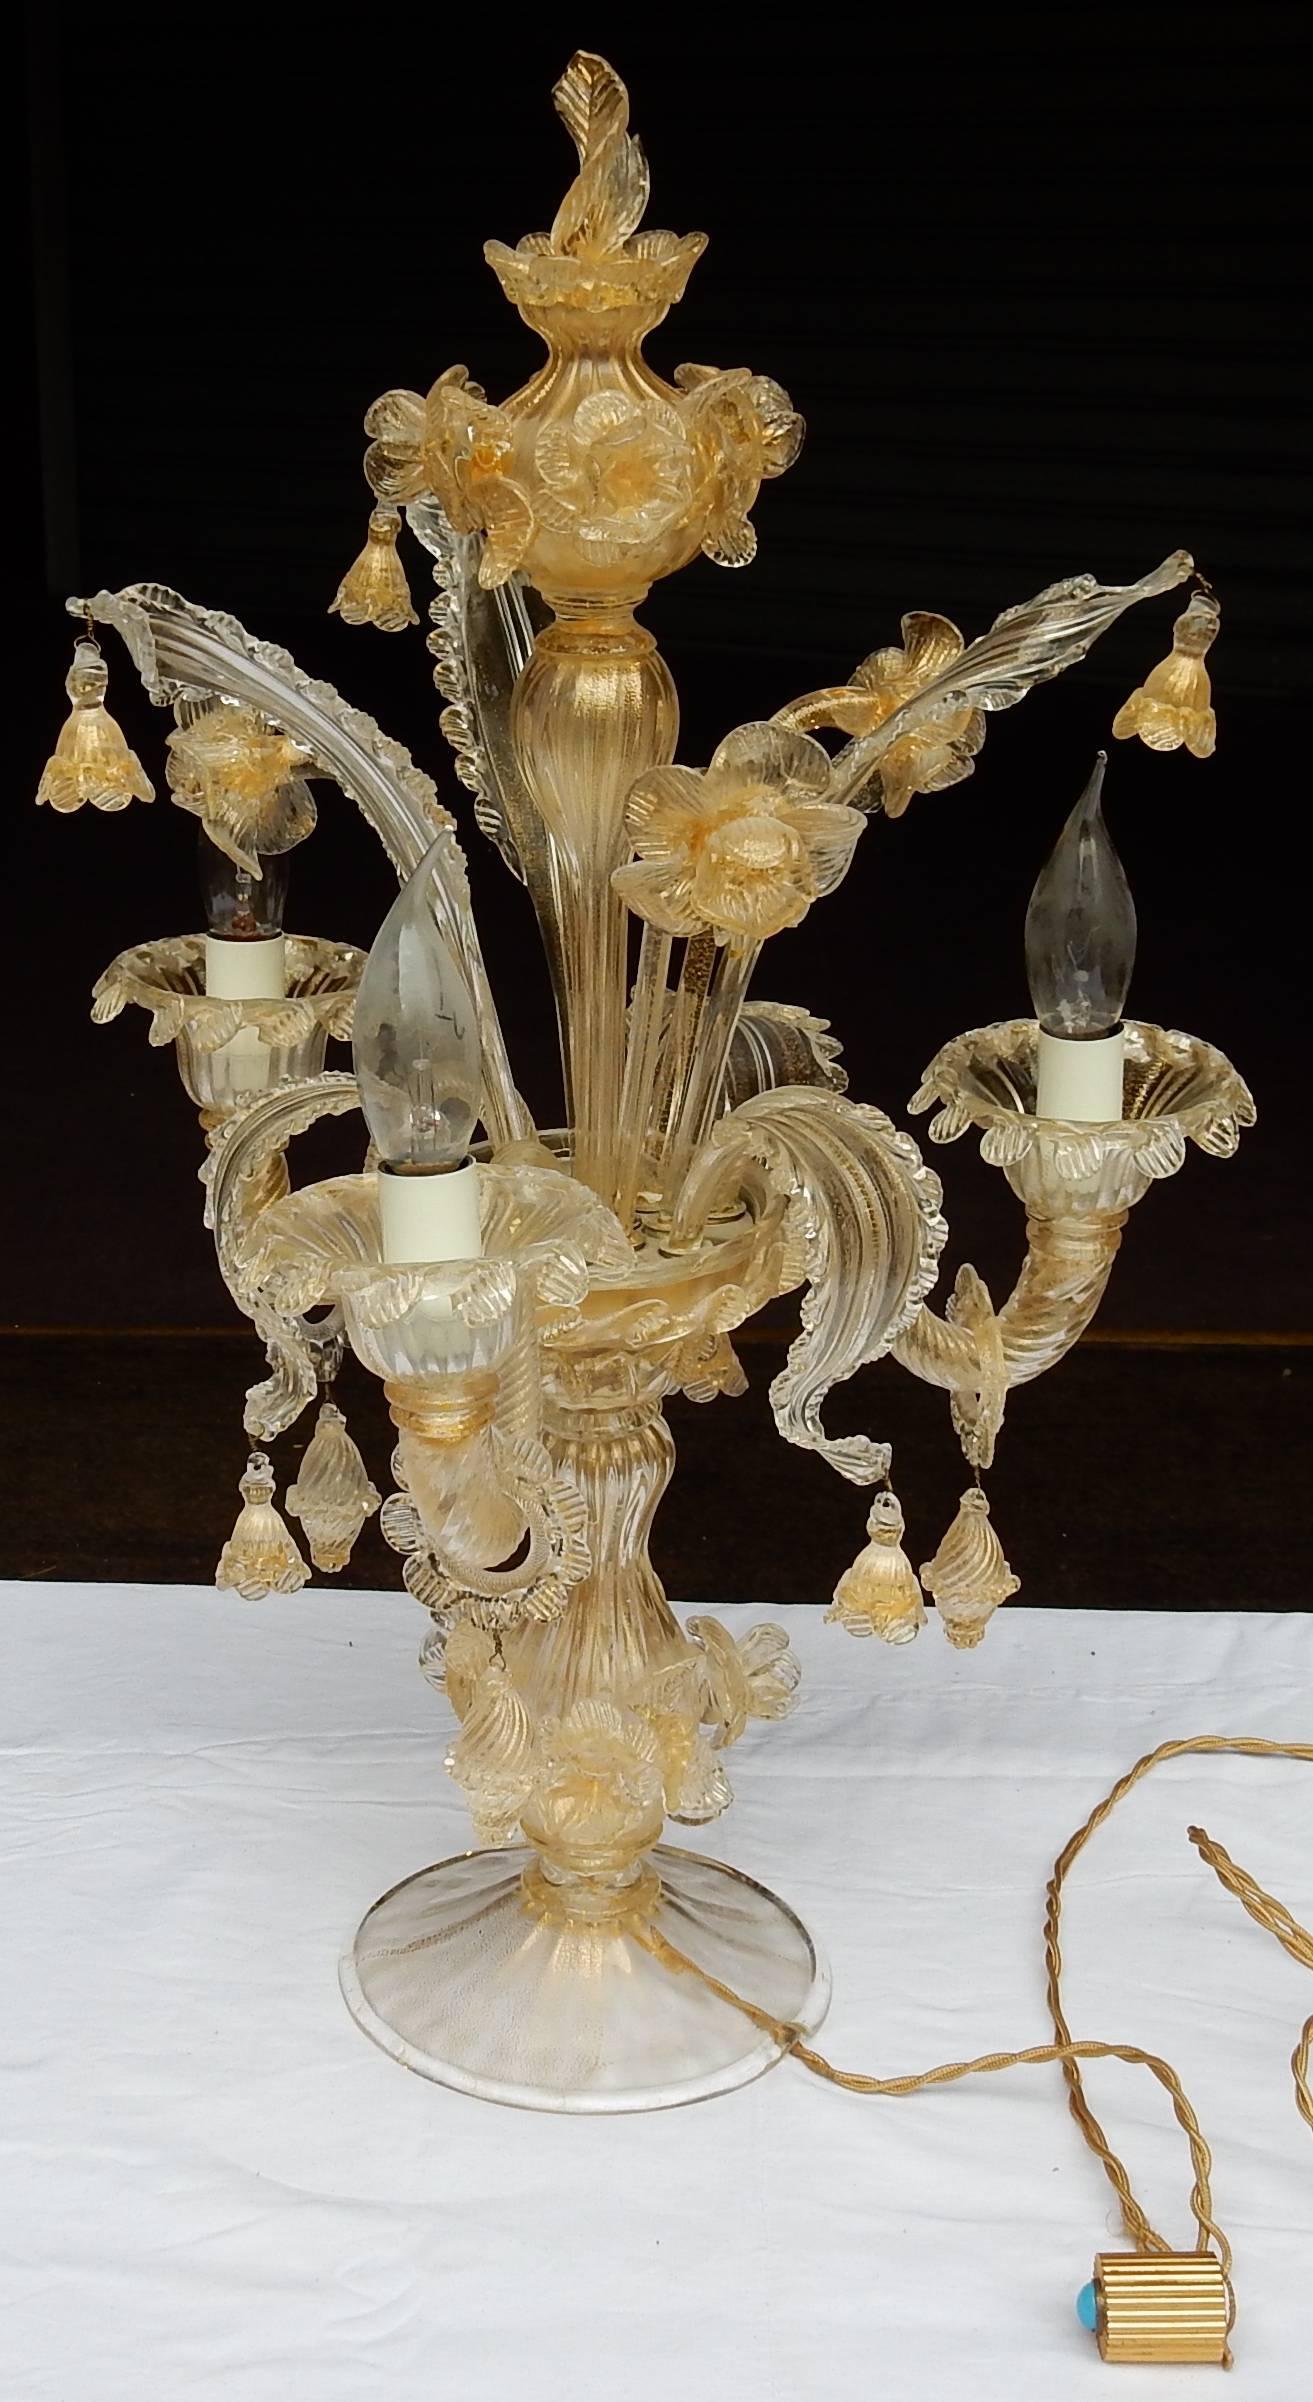 Clandestic Kristall mit Einschluss von Gold, guter Zustand, ca. 1950-1970, drei Blätter oben, drei Blätter unten und drei Blumen oben.